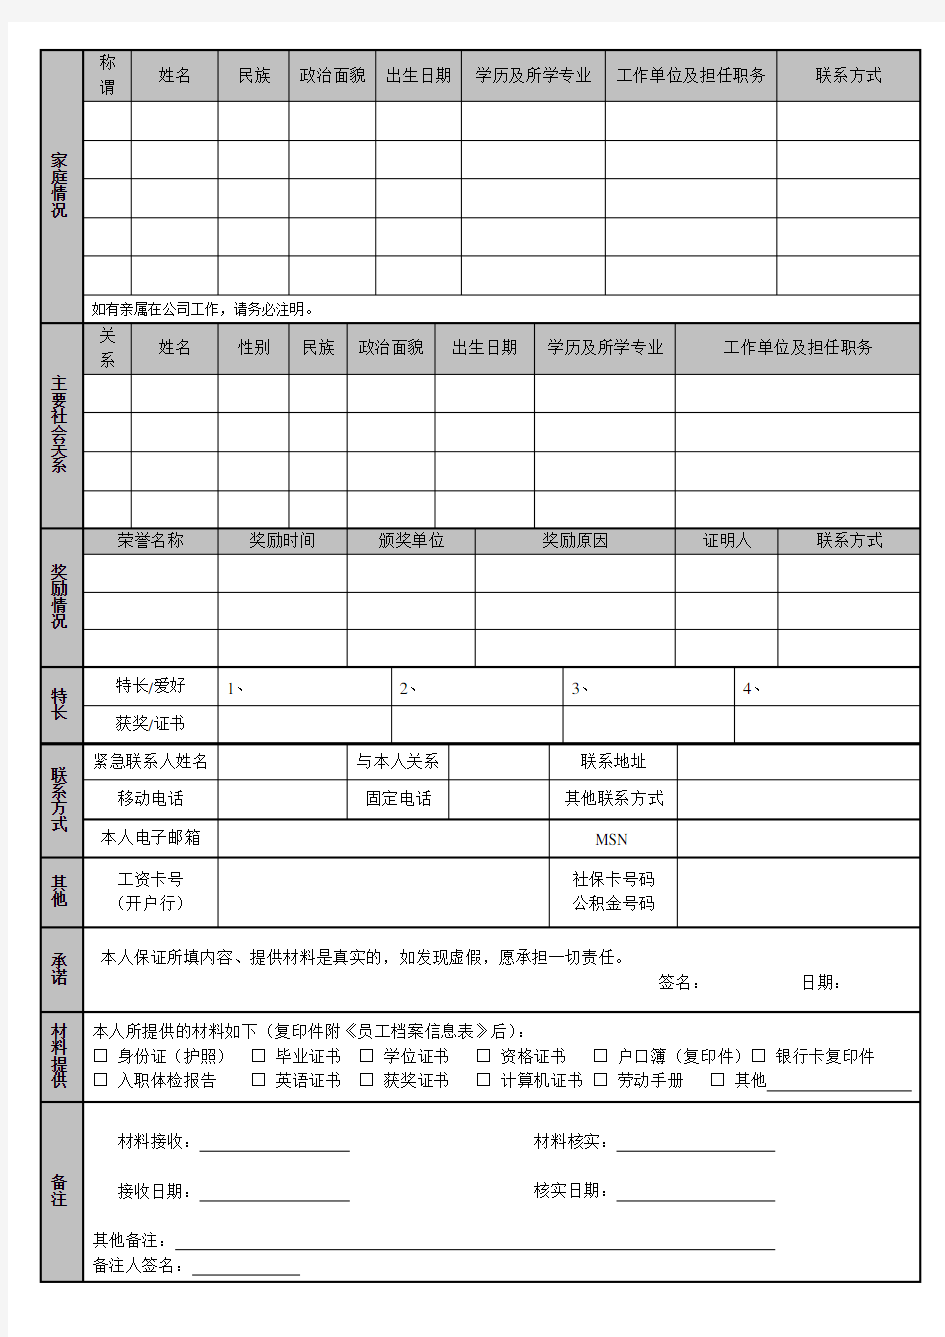 公司员工档案信息登记表(通用版)